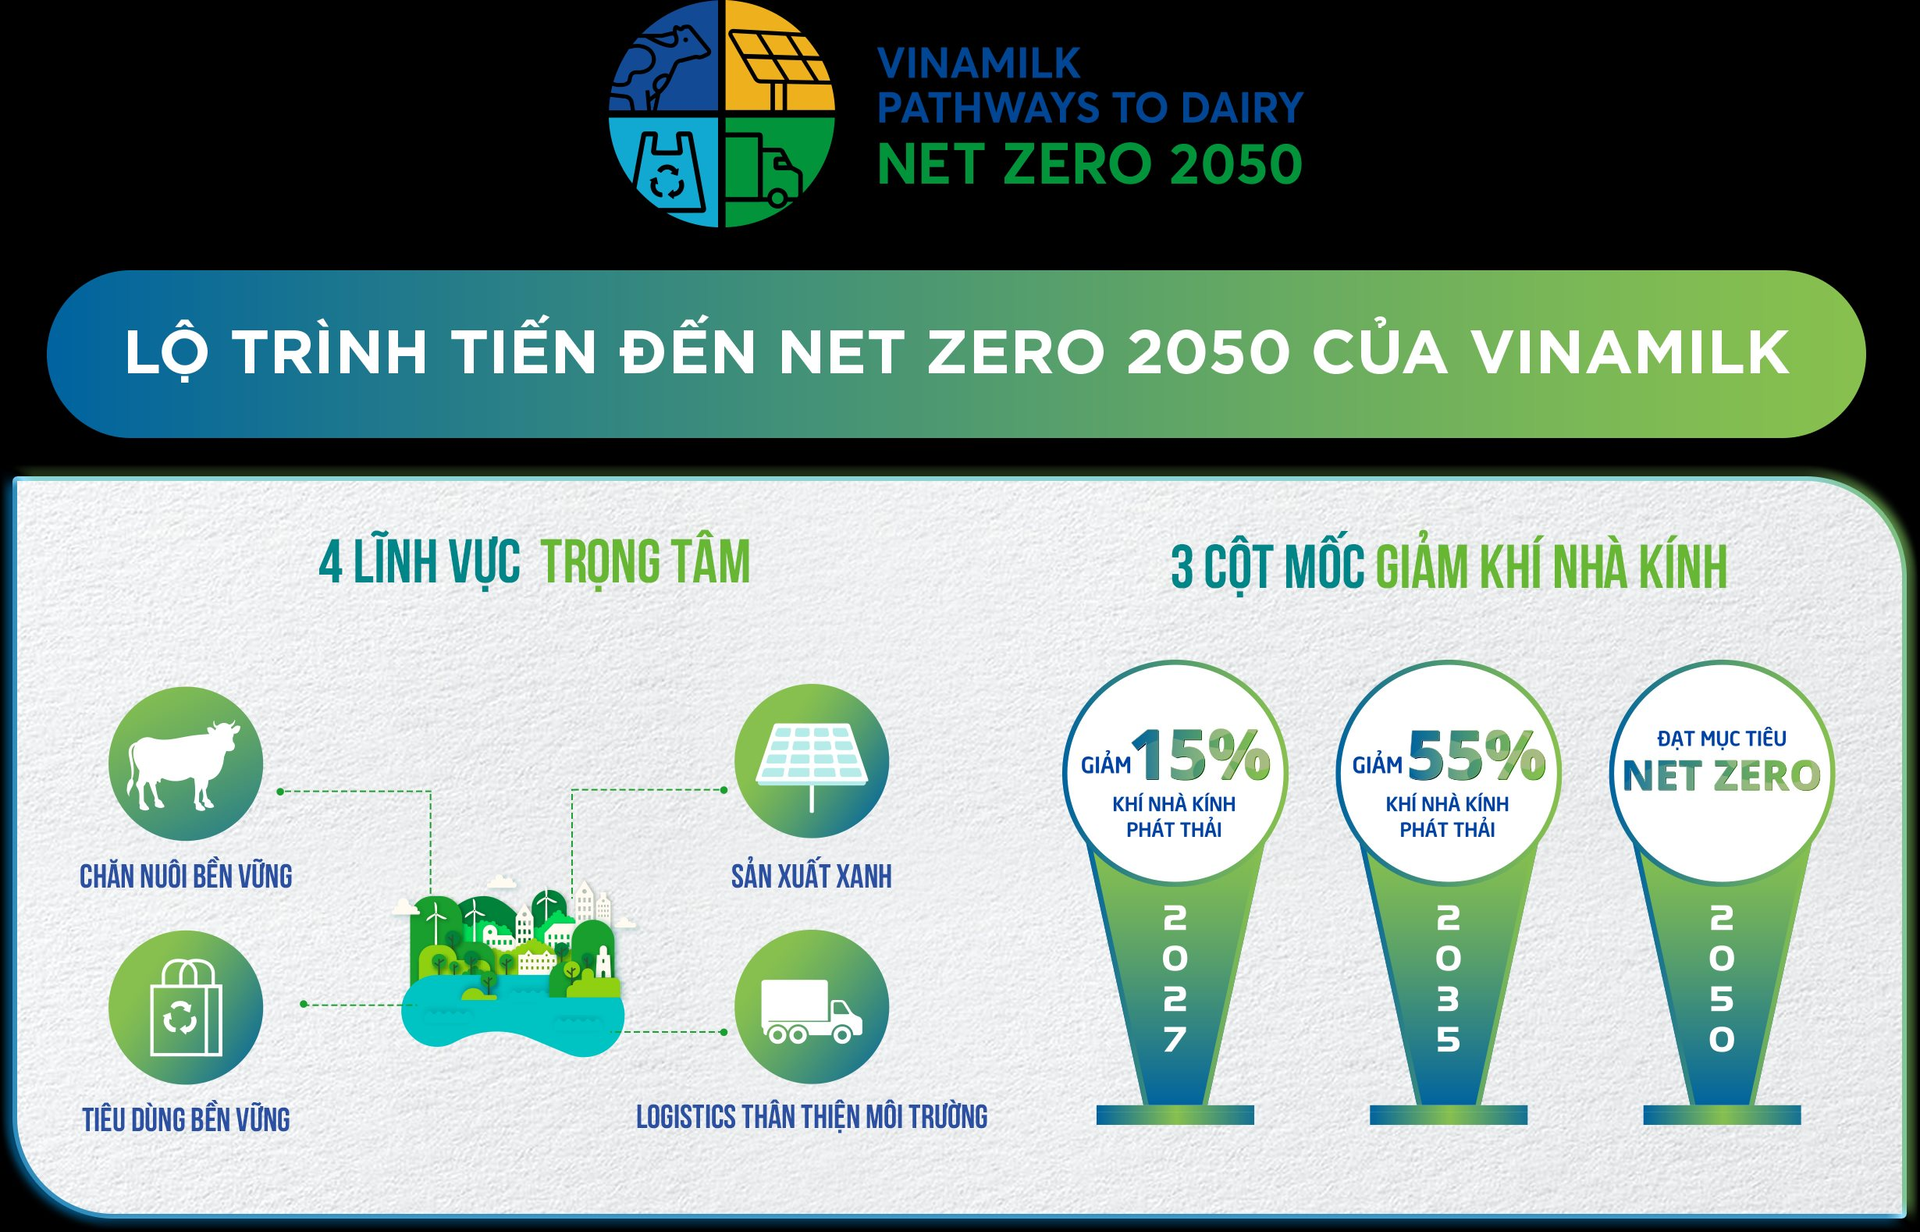 Vinamilk triển khai chương trình trợ giá mùa dịch tới gần 170 tỷ đồng   Doanh nghiệp  Vietnam VietnamPlus